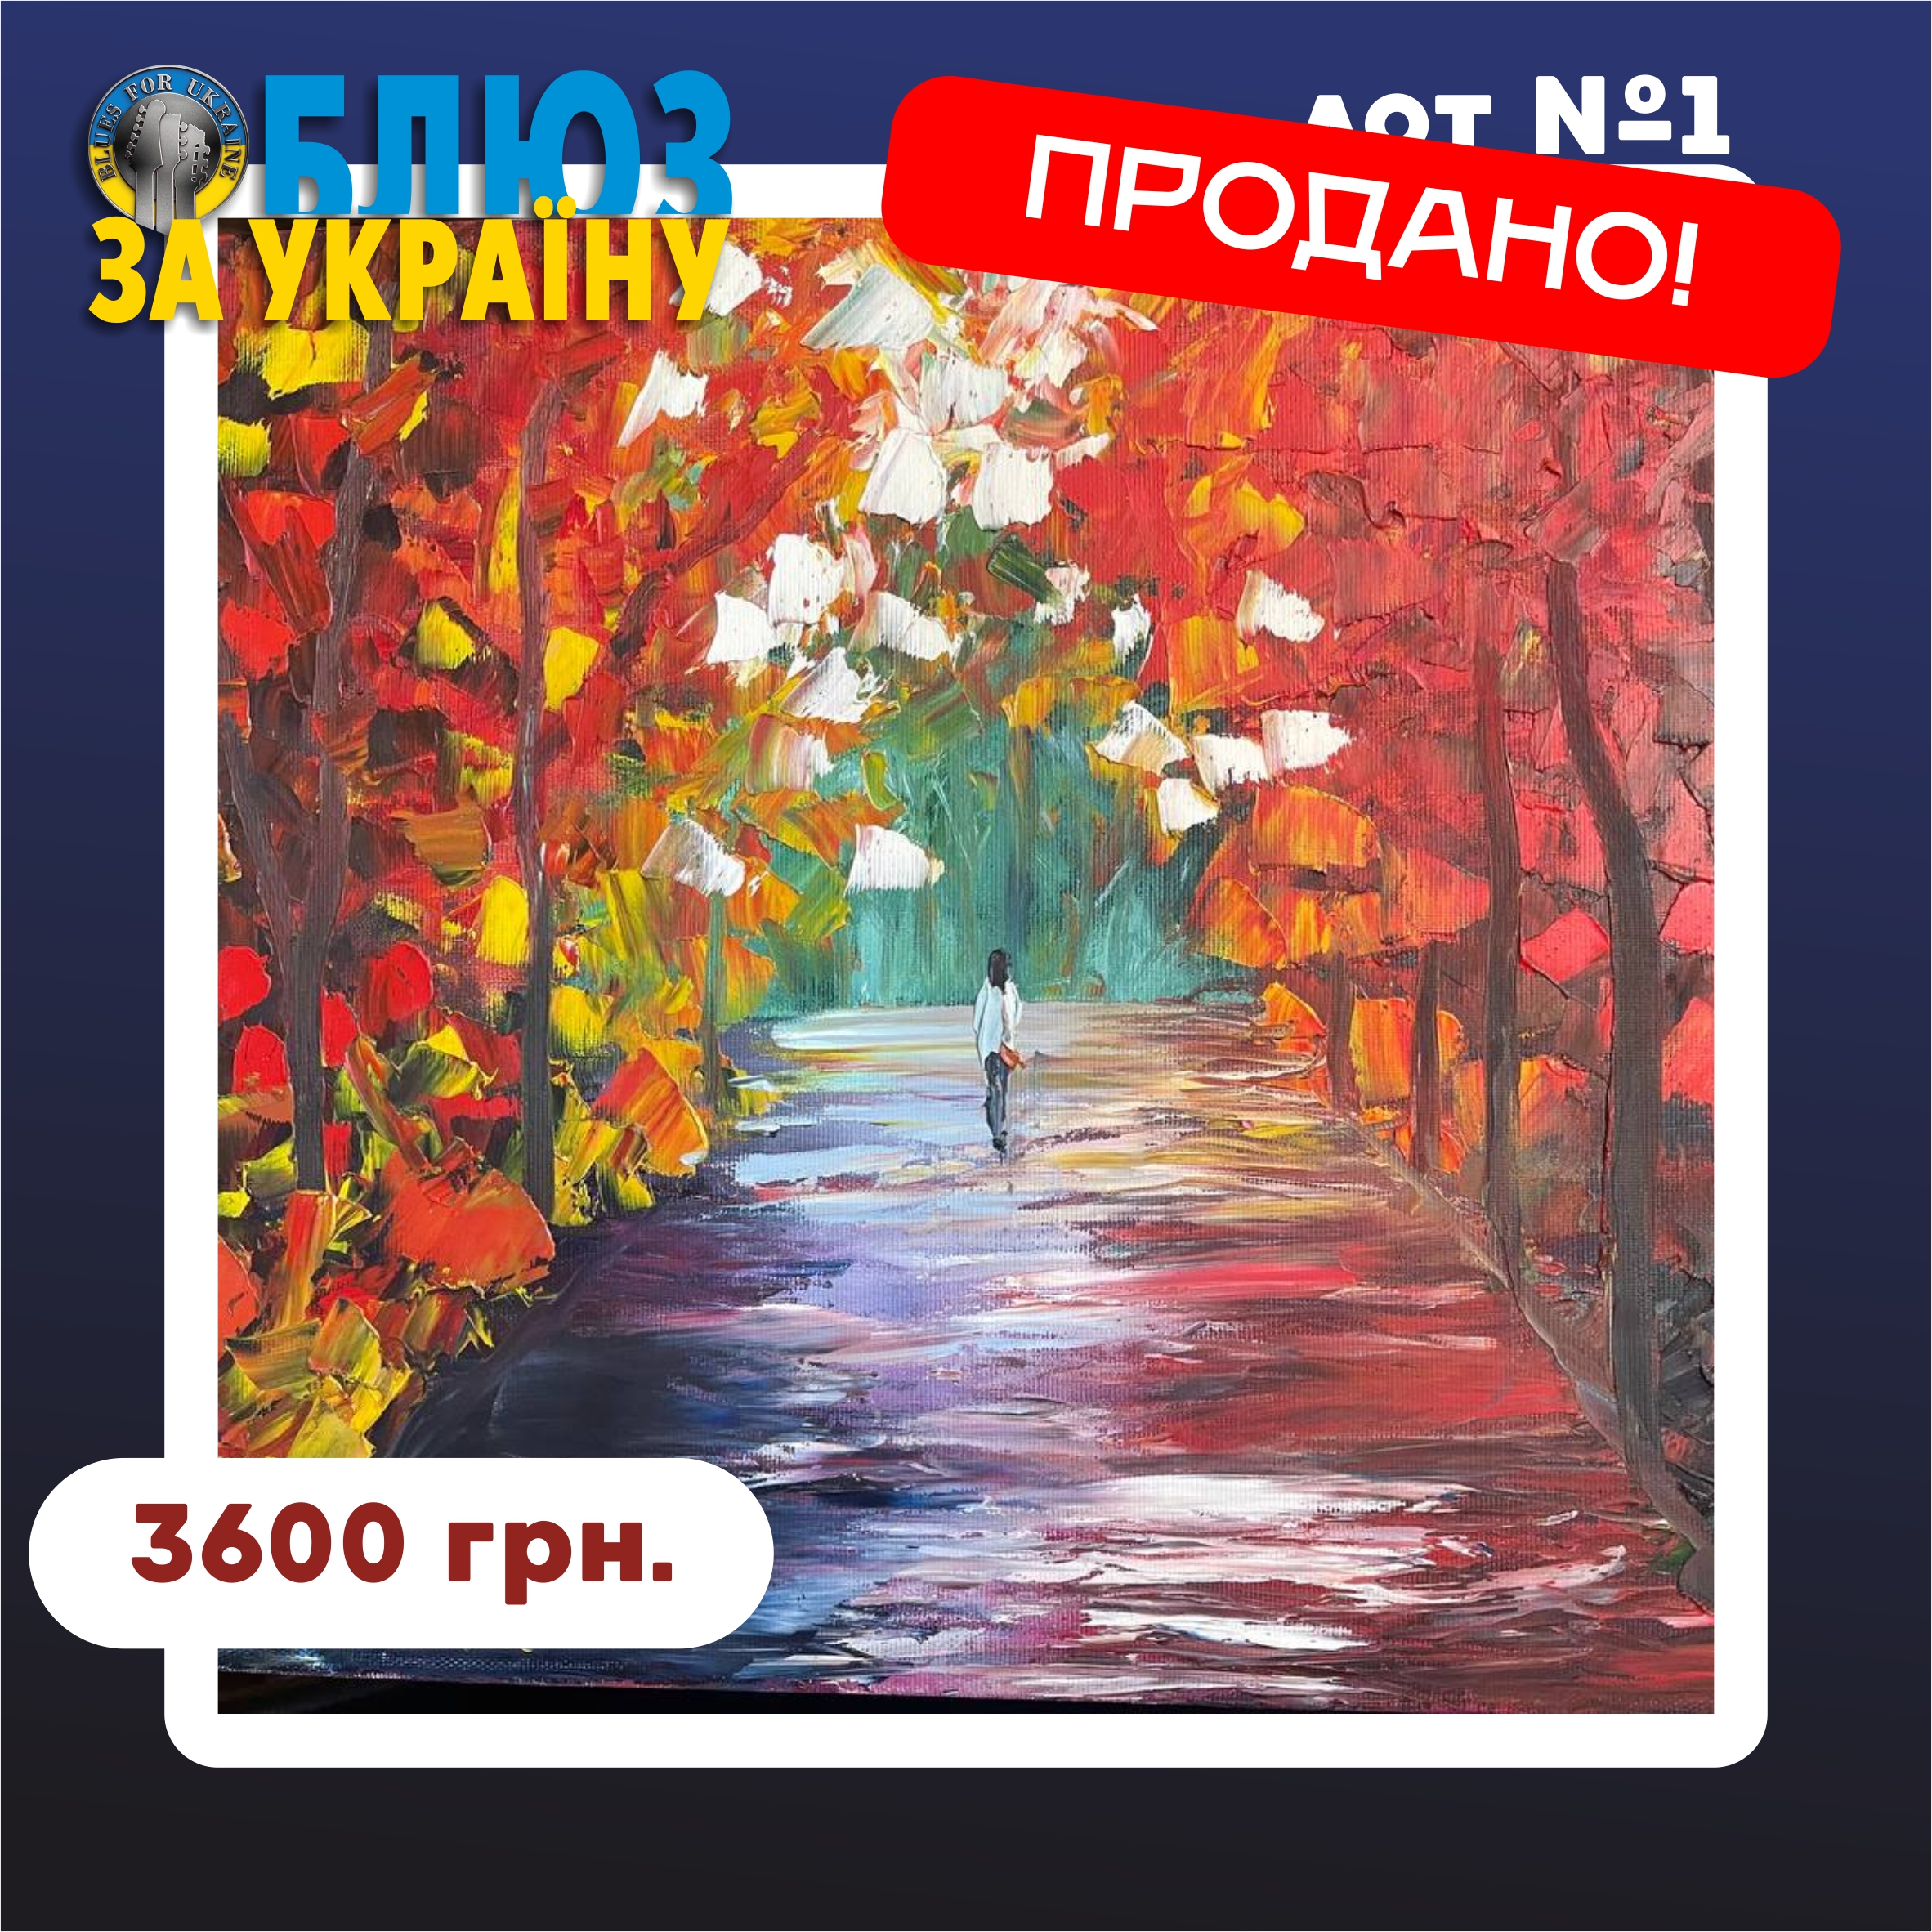 Lot №1 - «Осінь» (Autumn) 